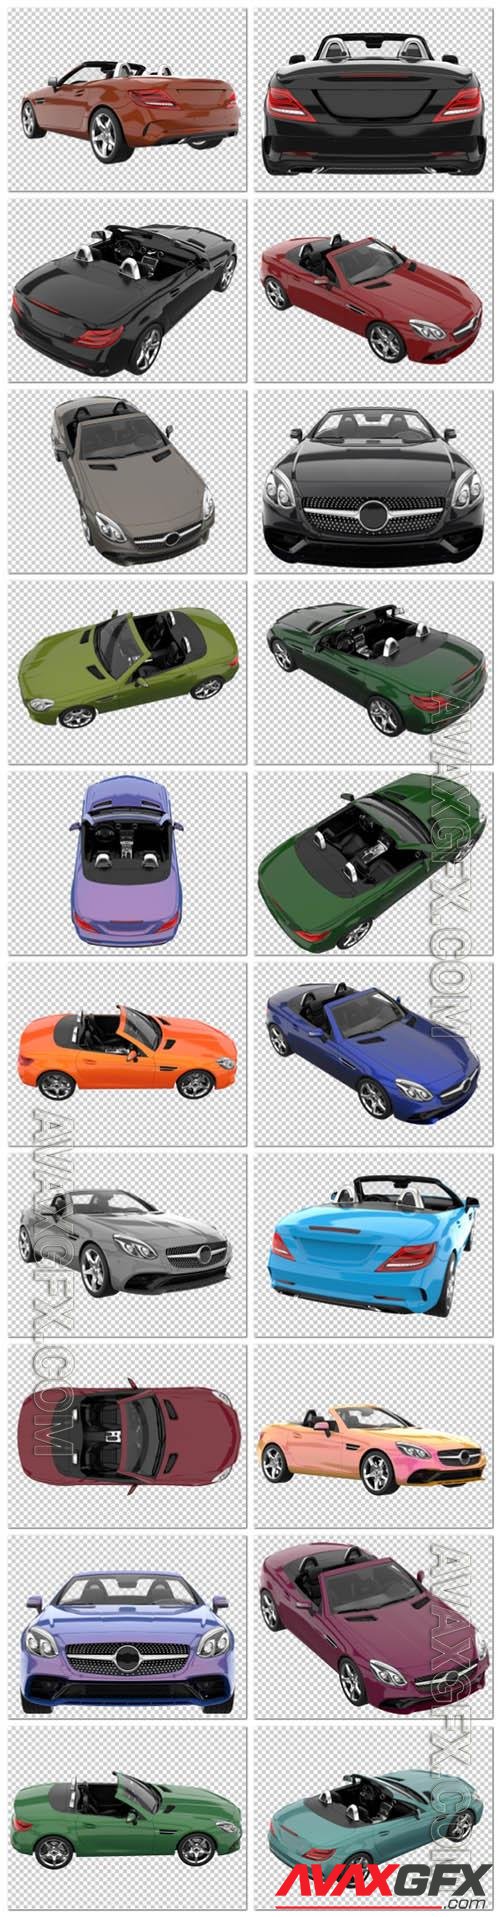 20 Sport car on transparent background, 3d rendering - illustration in psd vol 2